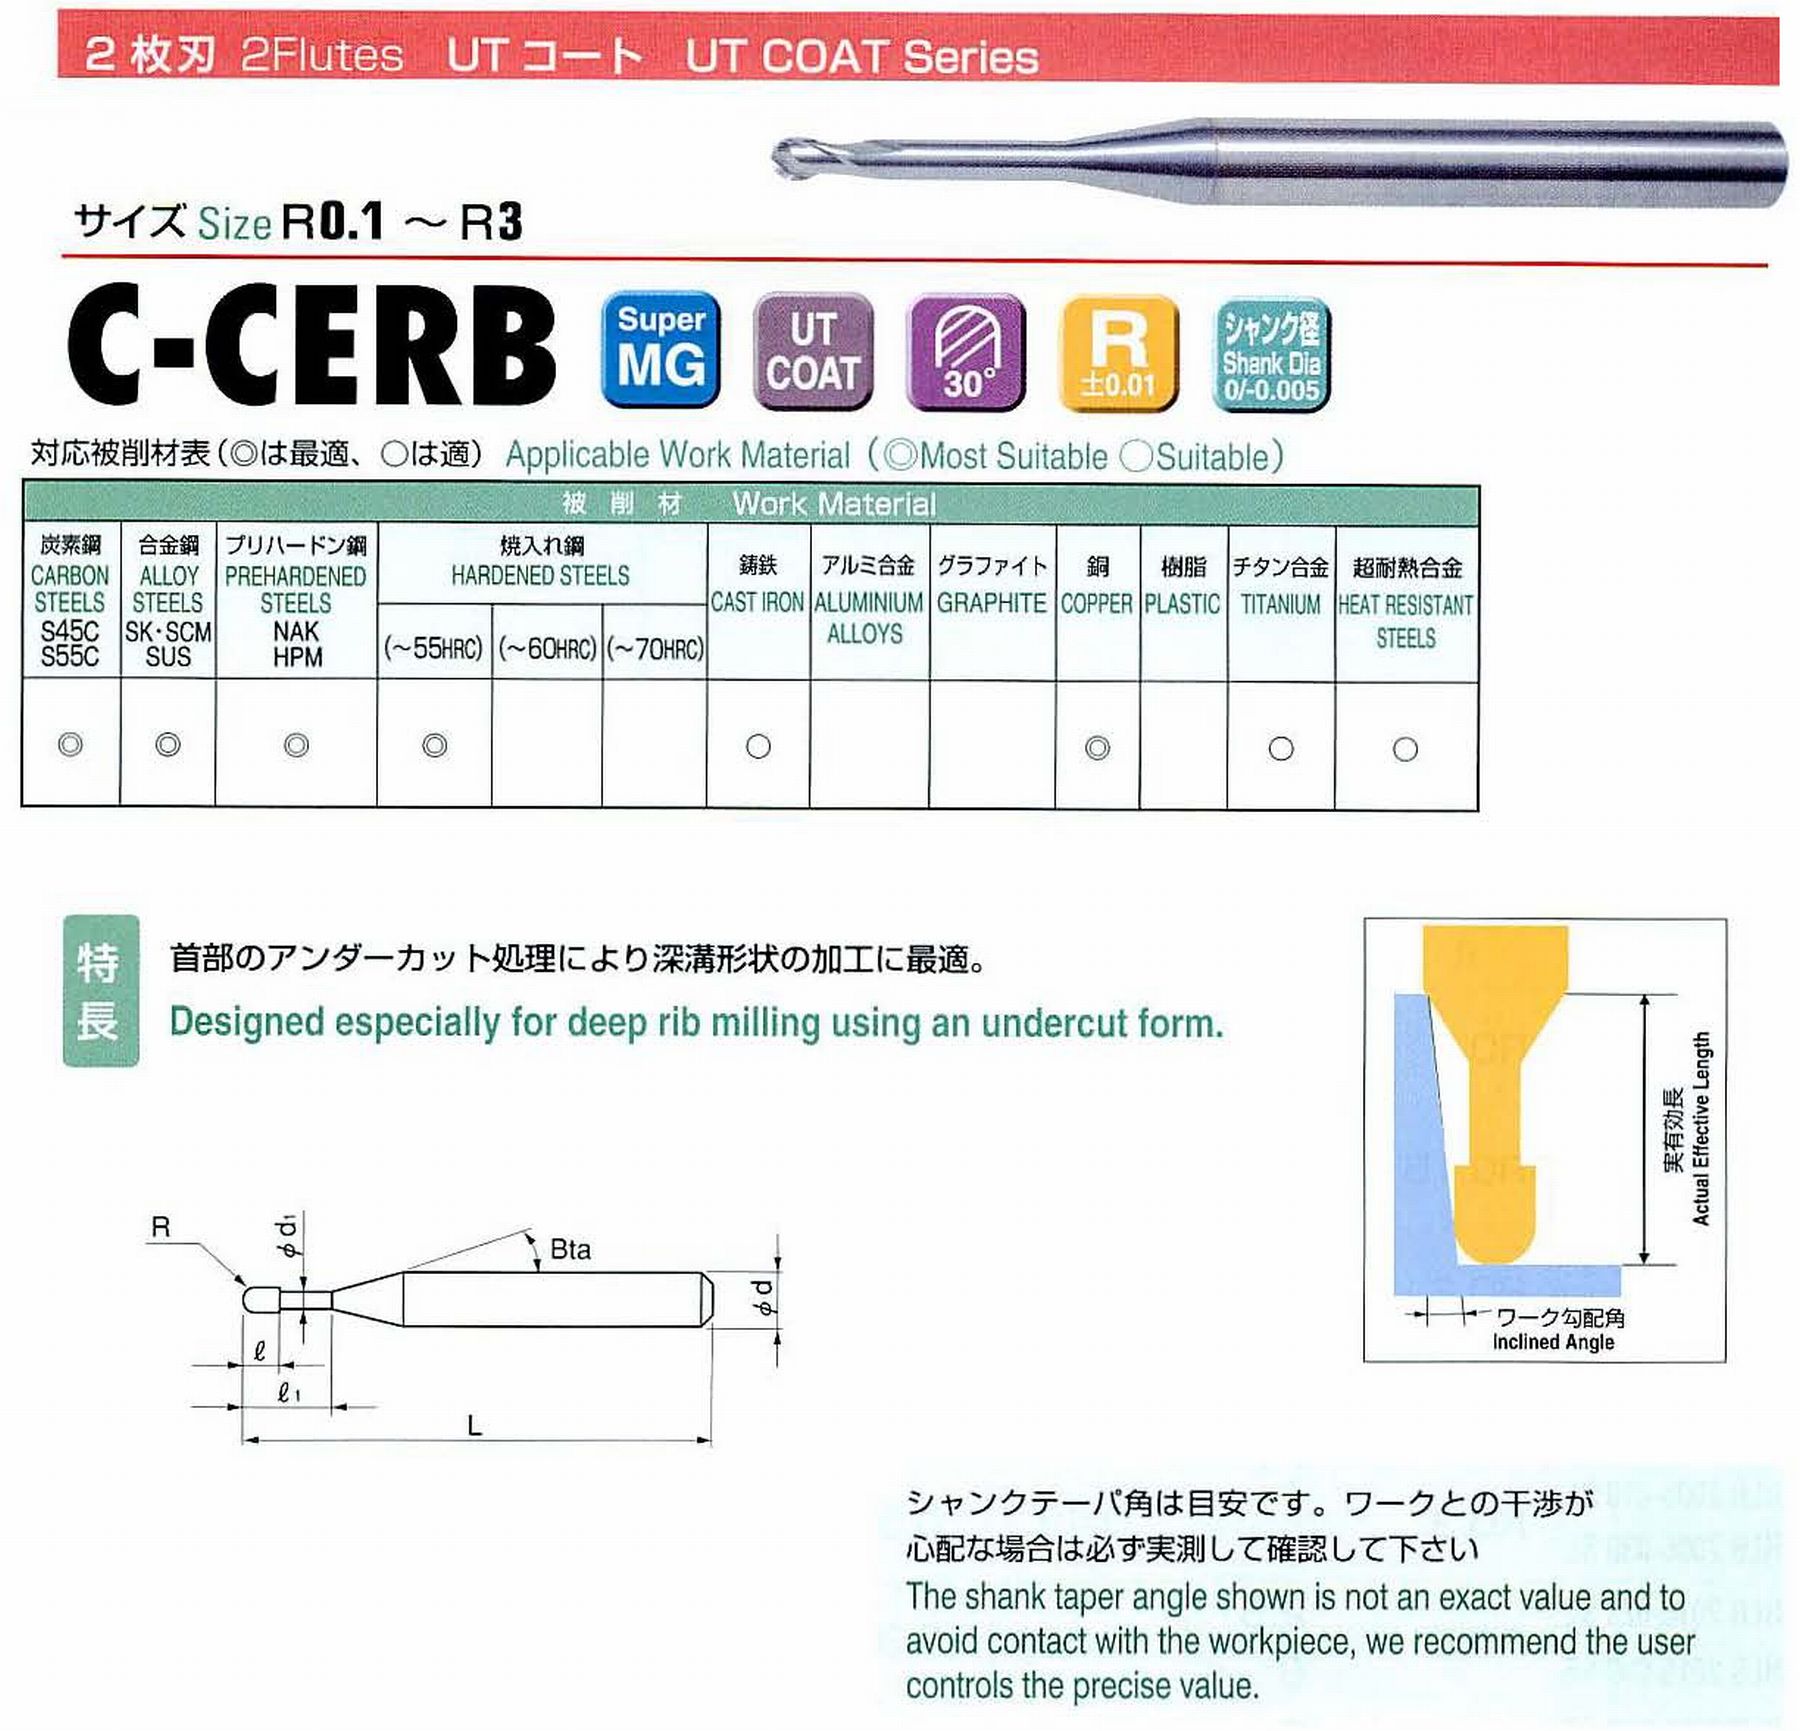 ユニオンツール 2枚刃 C-CERB2010-2.5 ボール半径R0.5 有効長2.5 刃長0.8 首径0.96 シャンクテーパ角16° 全長45 シャンク径4